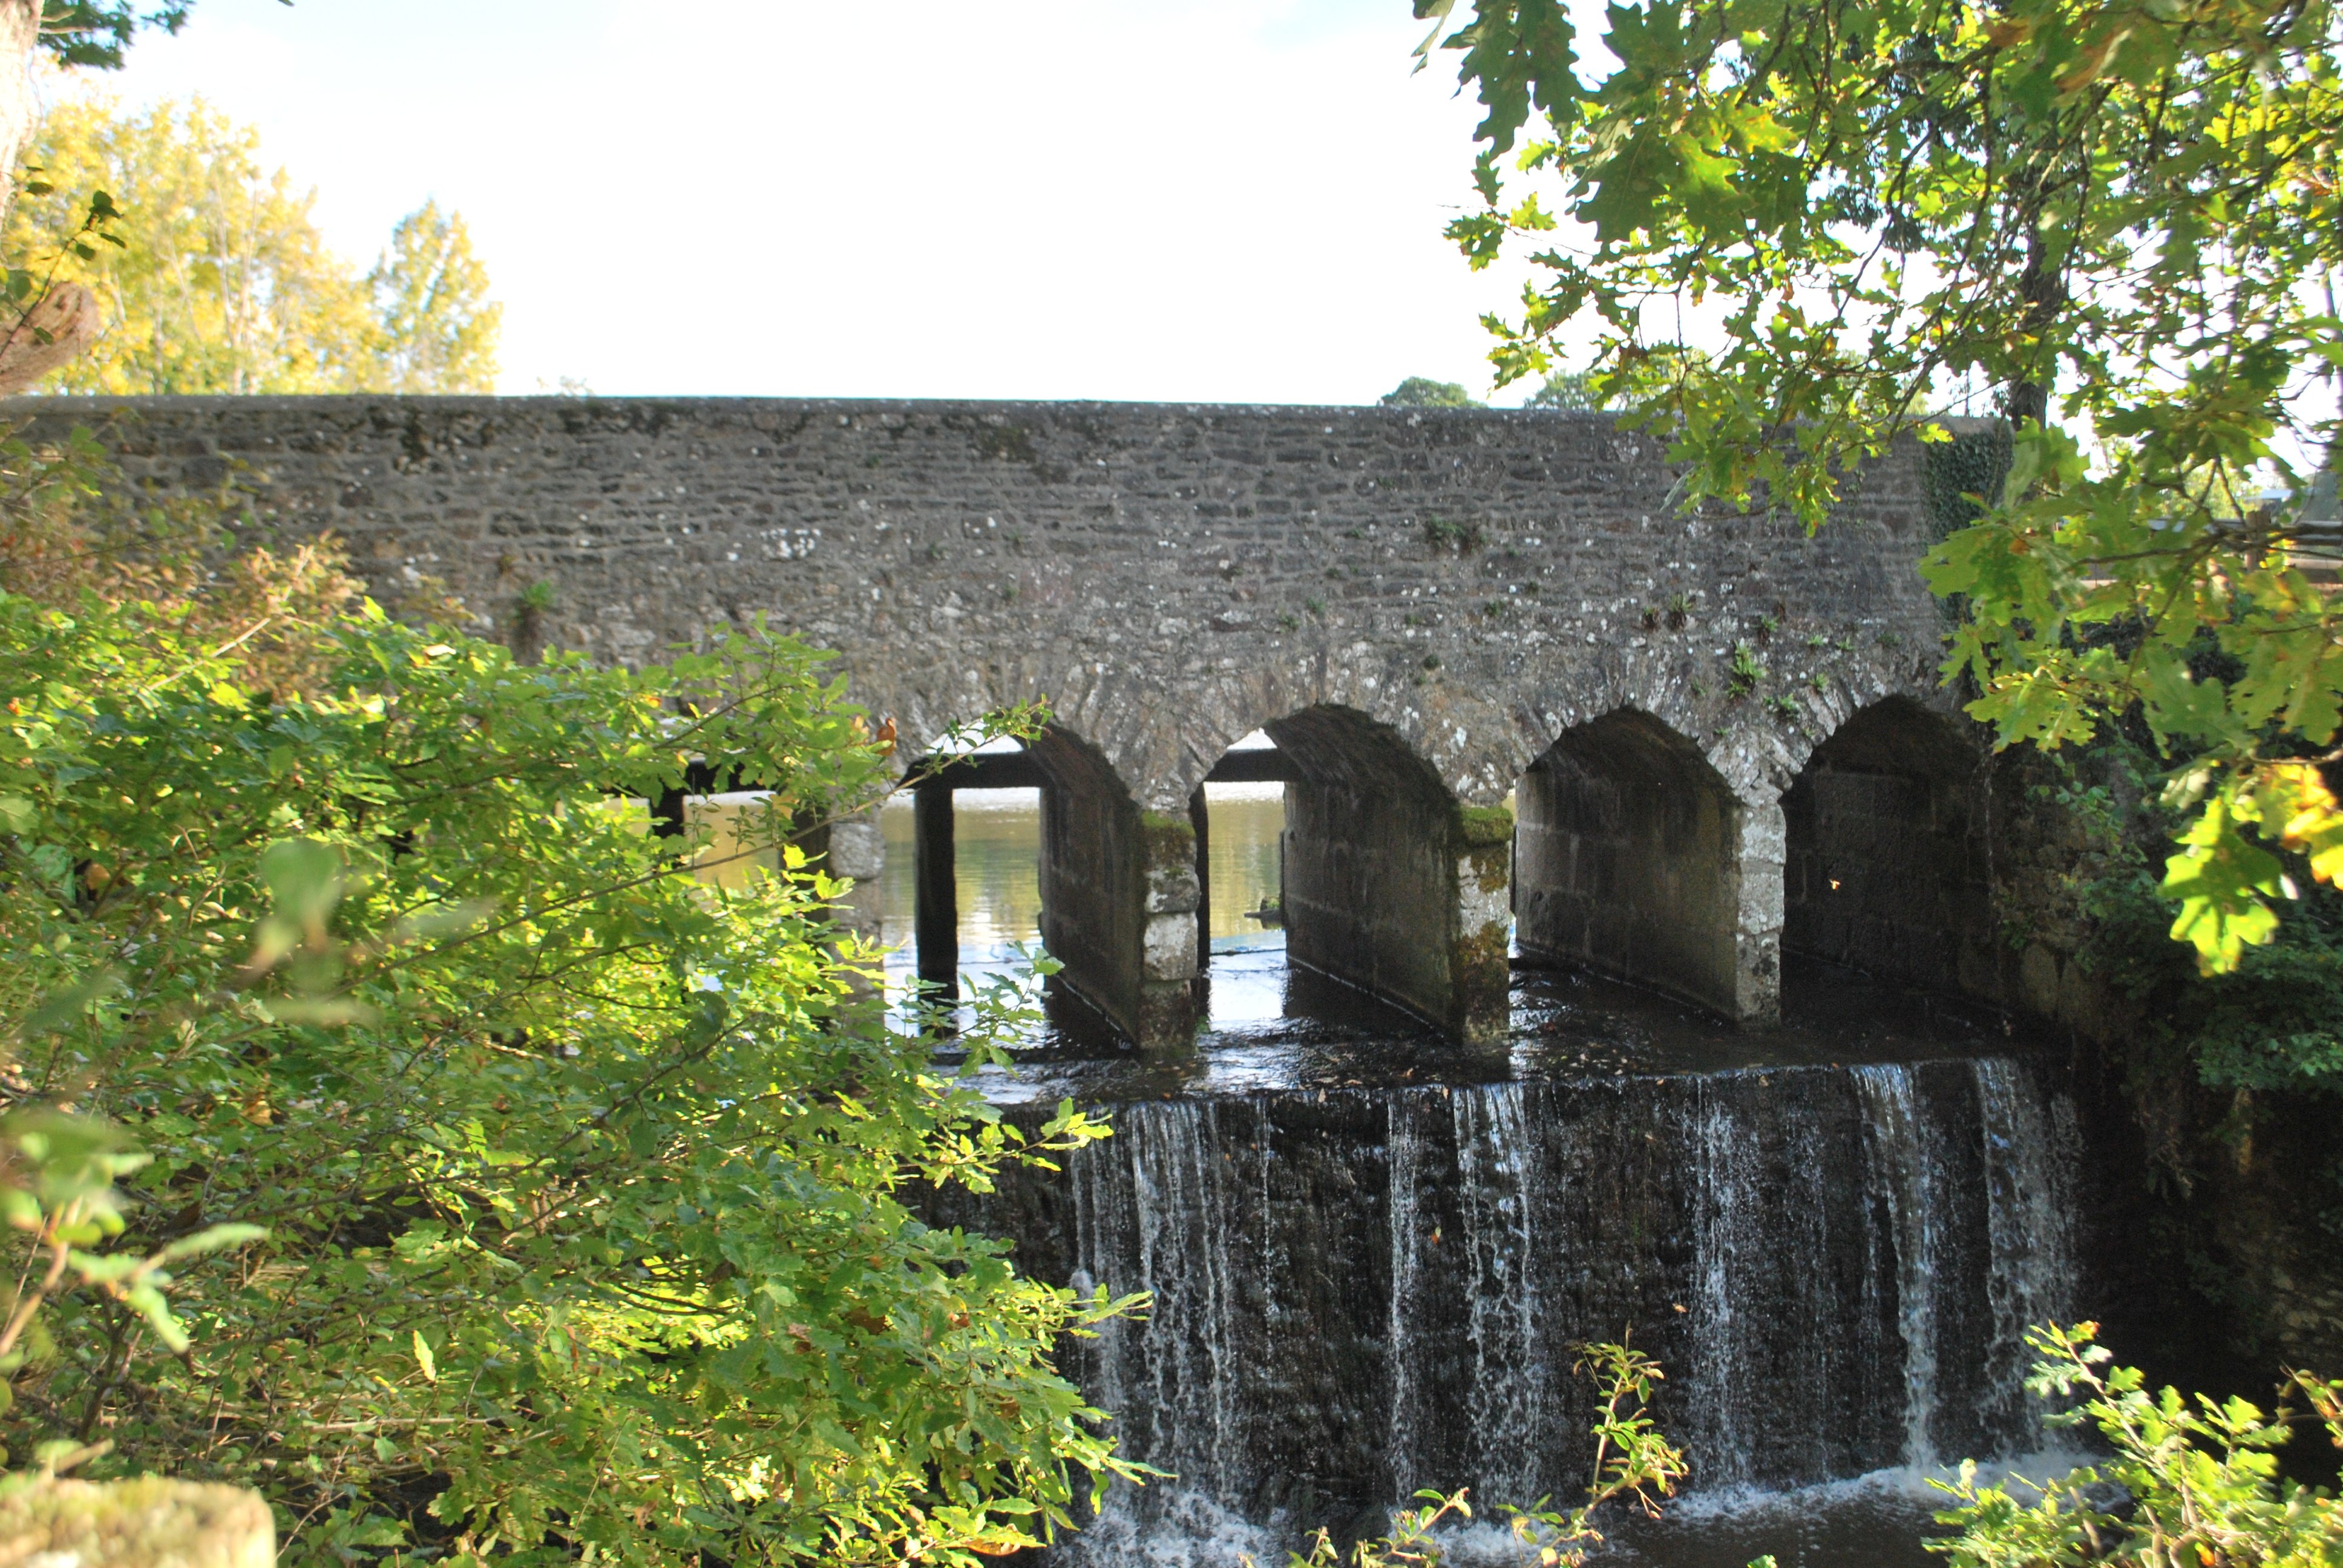 Un pont en pierre avec plusieurs arches, le long d'une chute d'eau artificielle. On devine des encoches pour mettre des panneaux en bois de l'autre côté, servant à fermer le bassin longé par le pont.